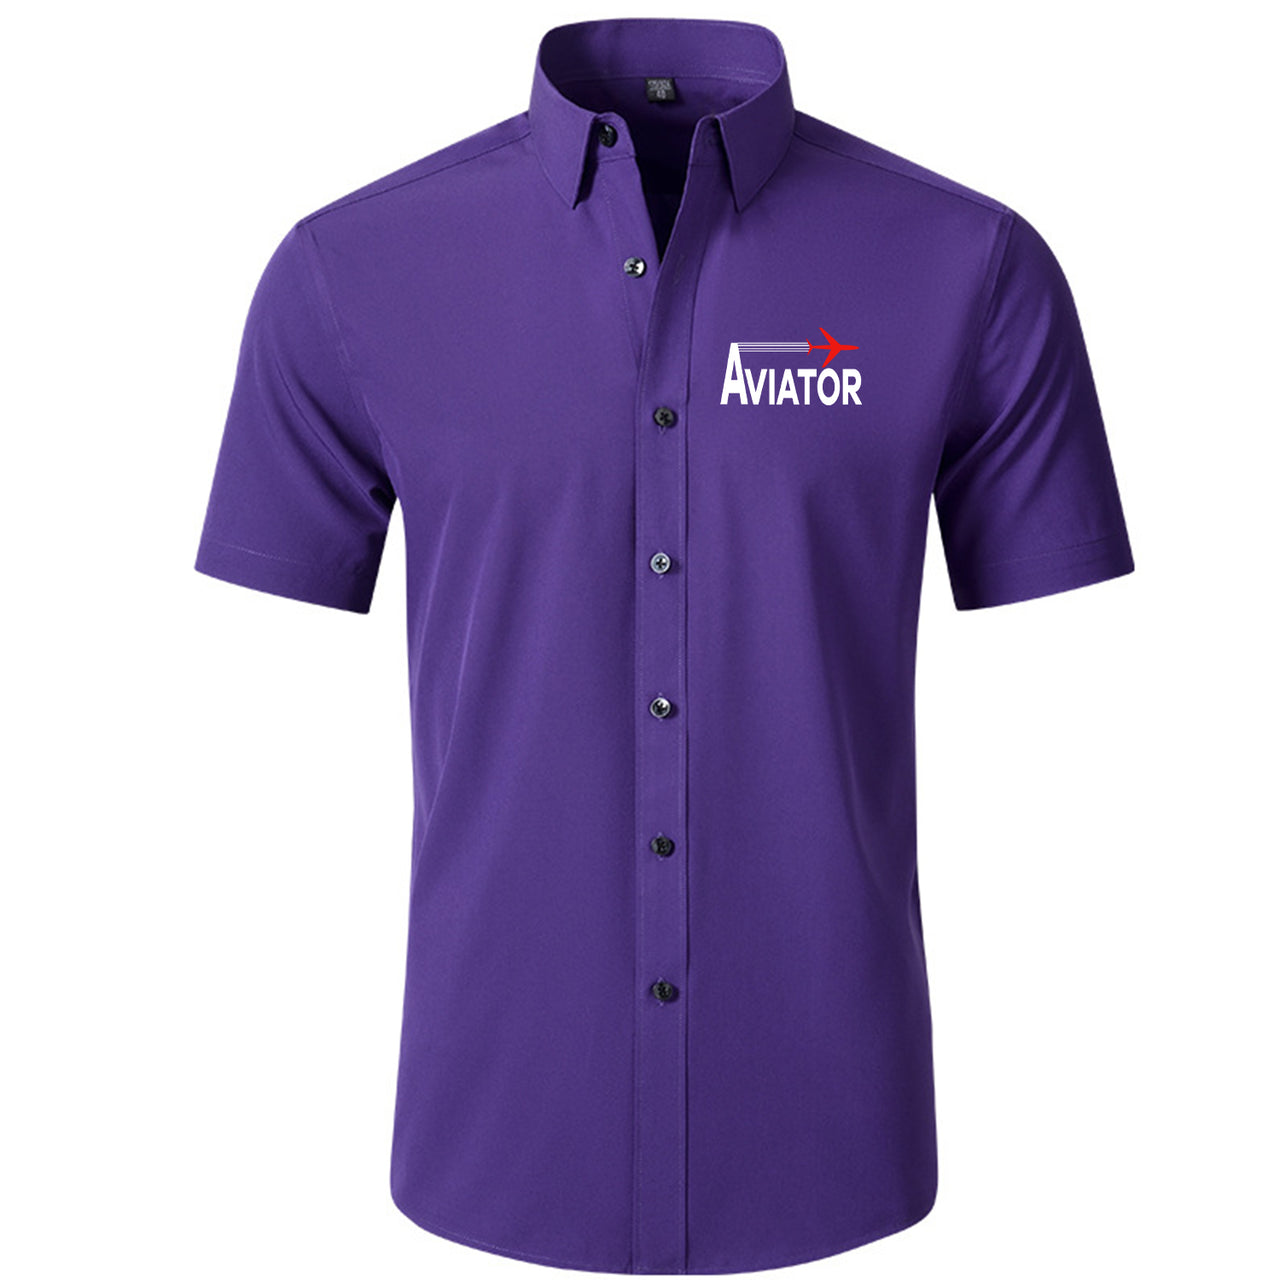 Aviator Designed Short Sleeve Shirts